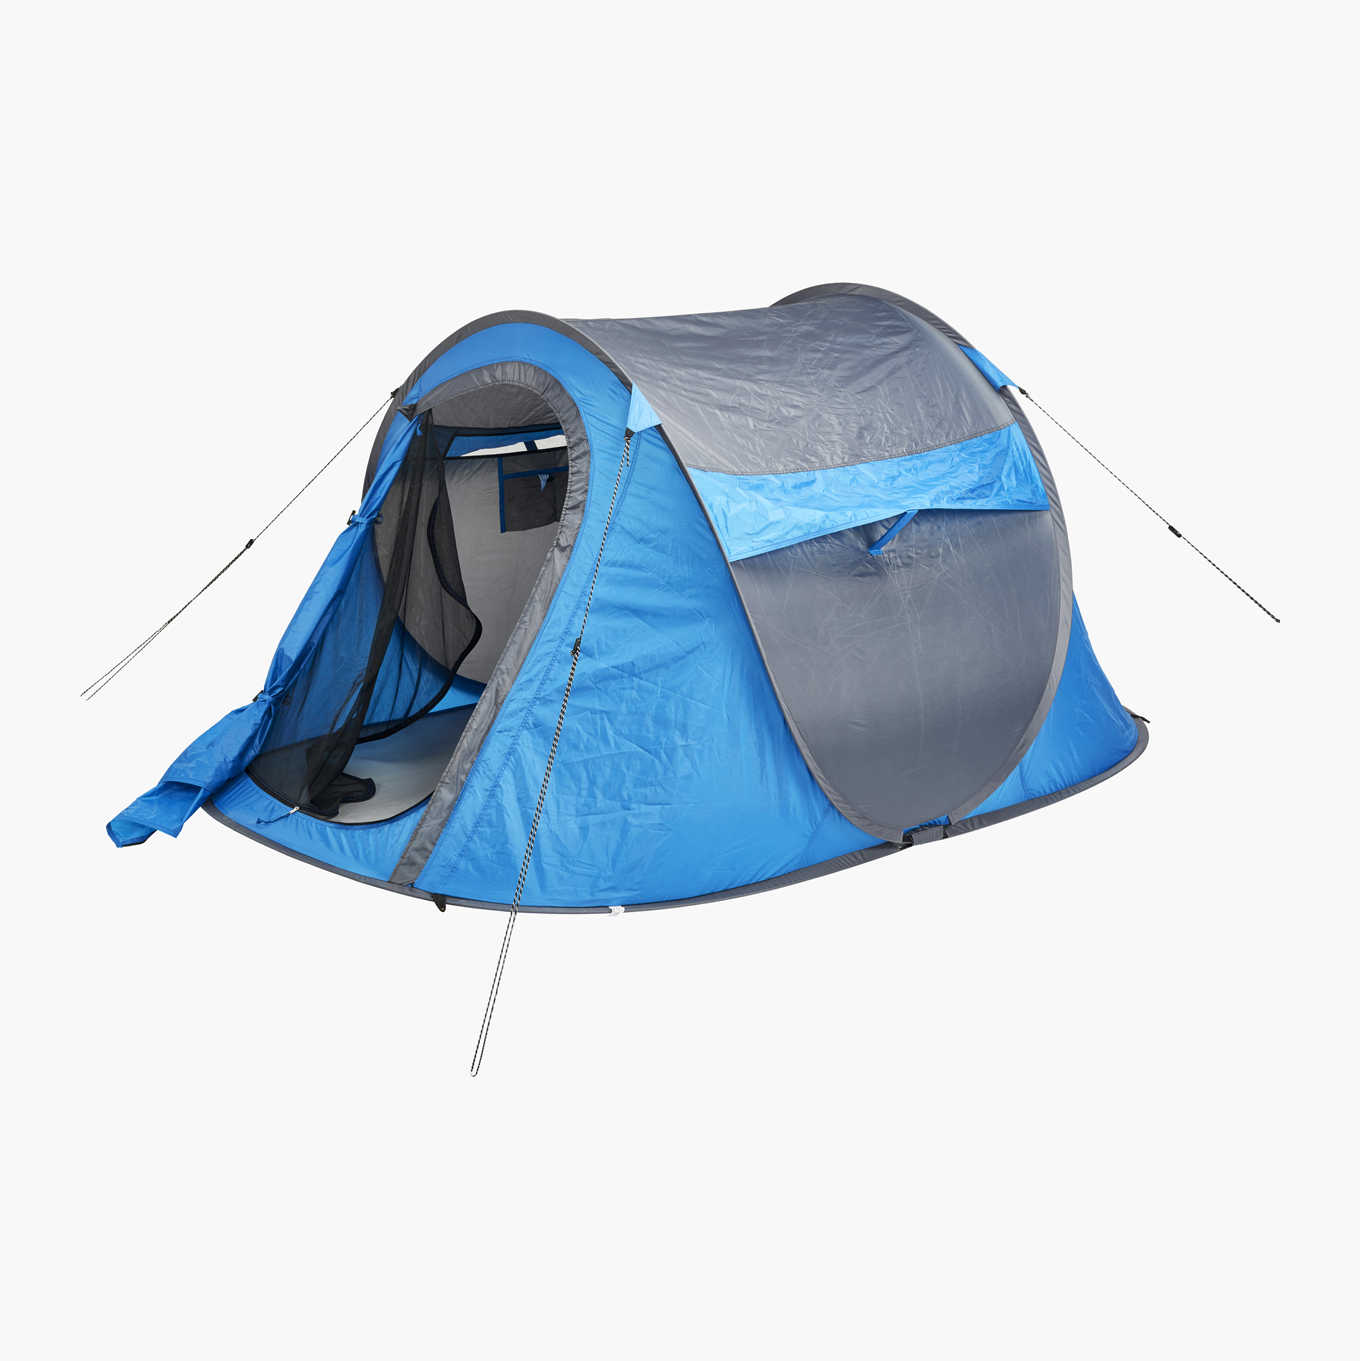 Päivittää 92+ imagen itsestään pystytettävä teltta